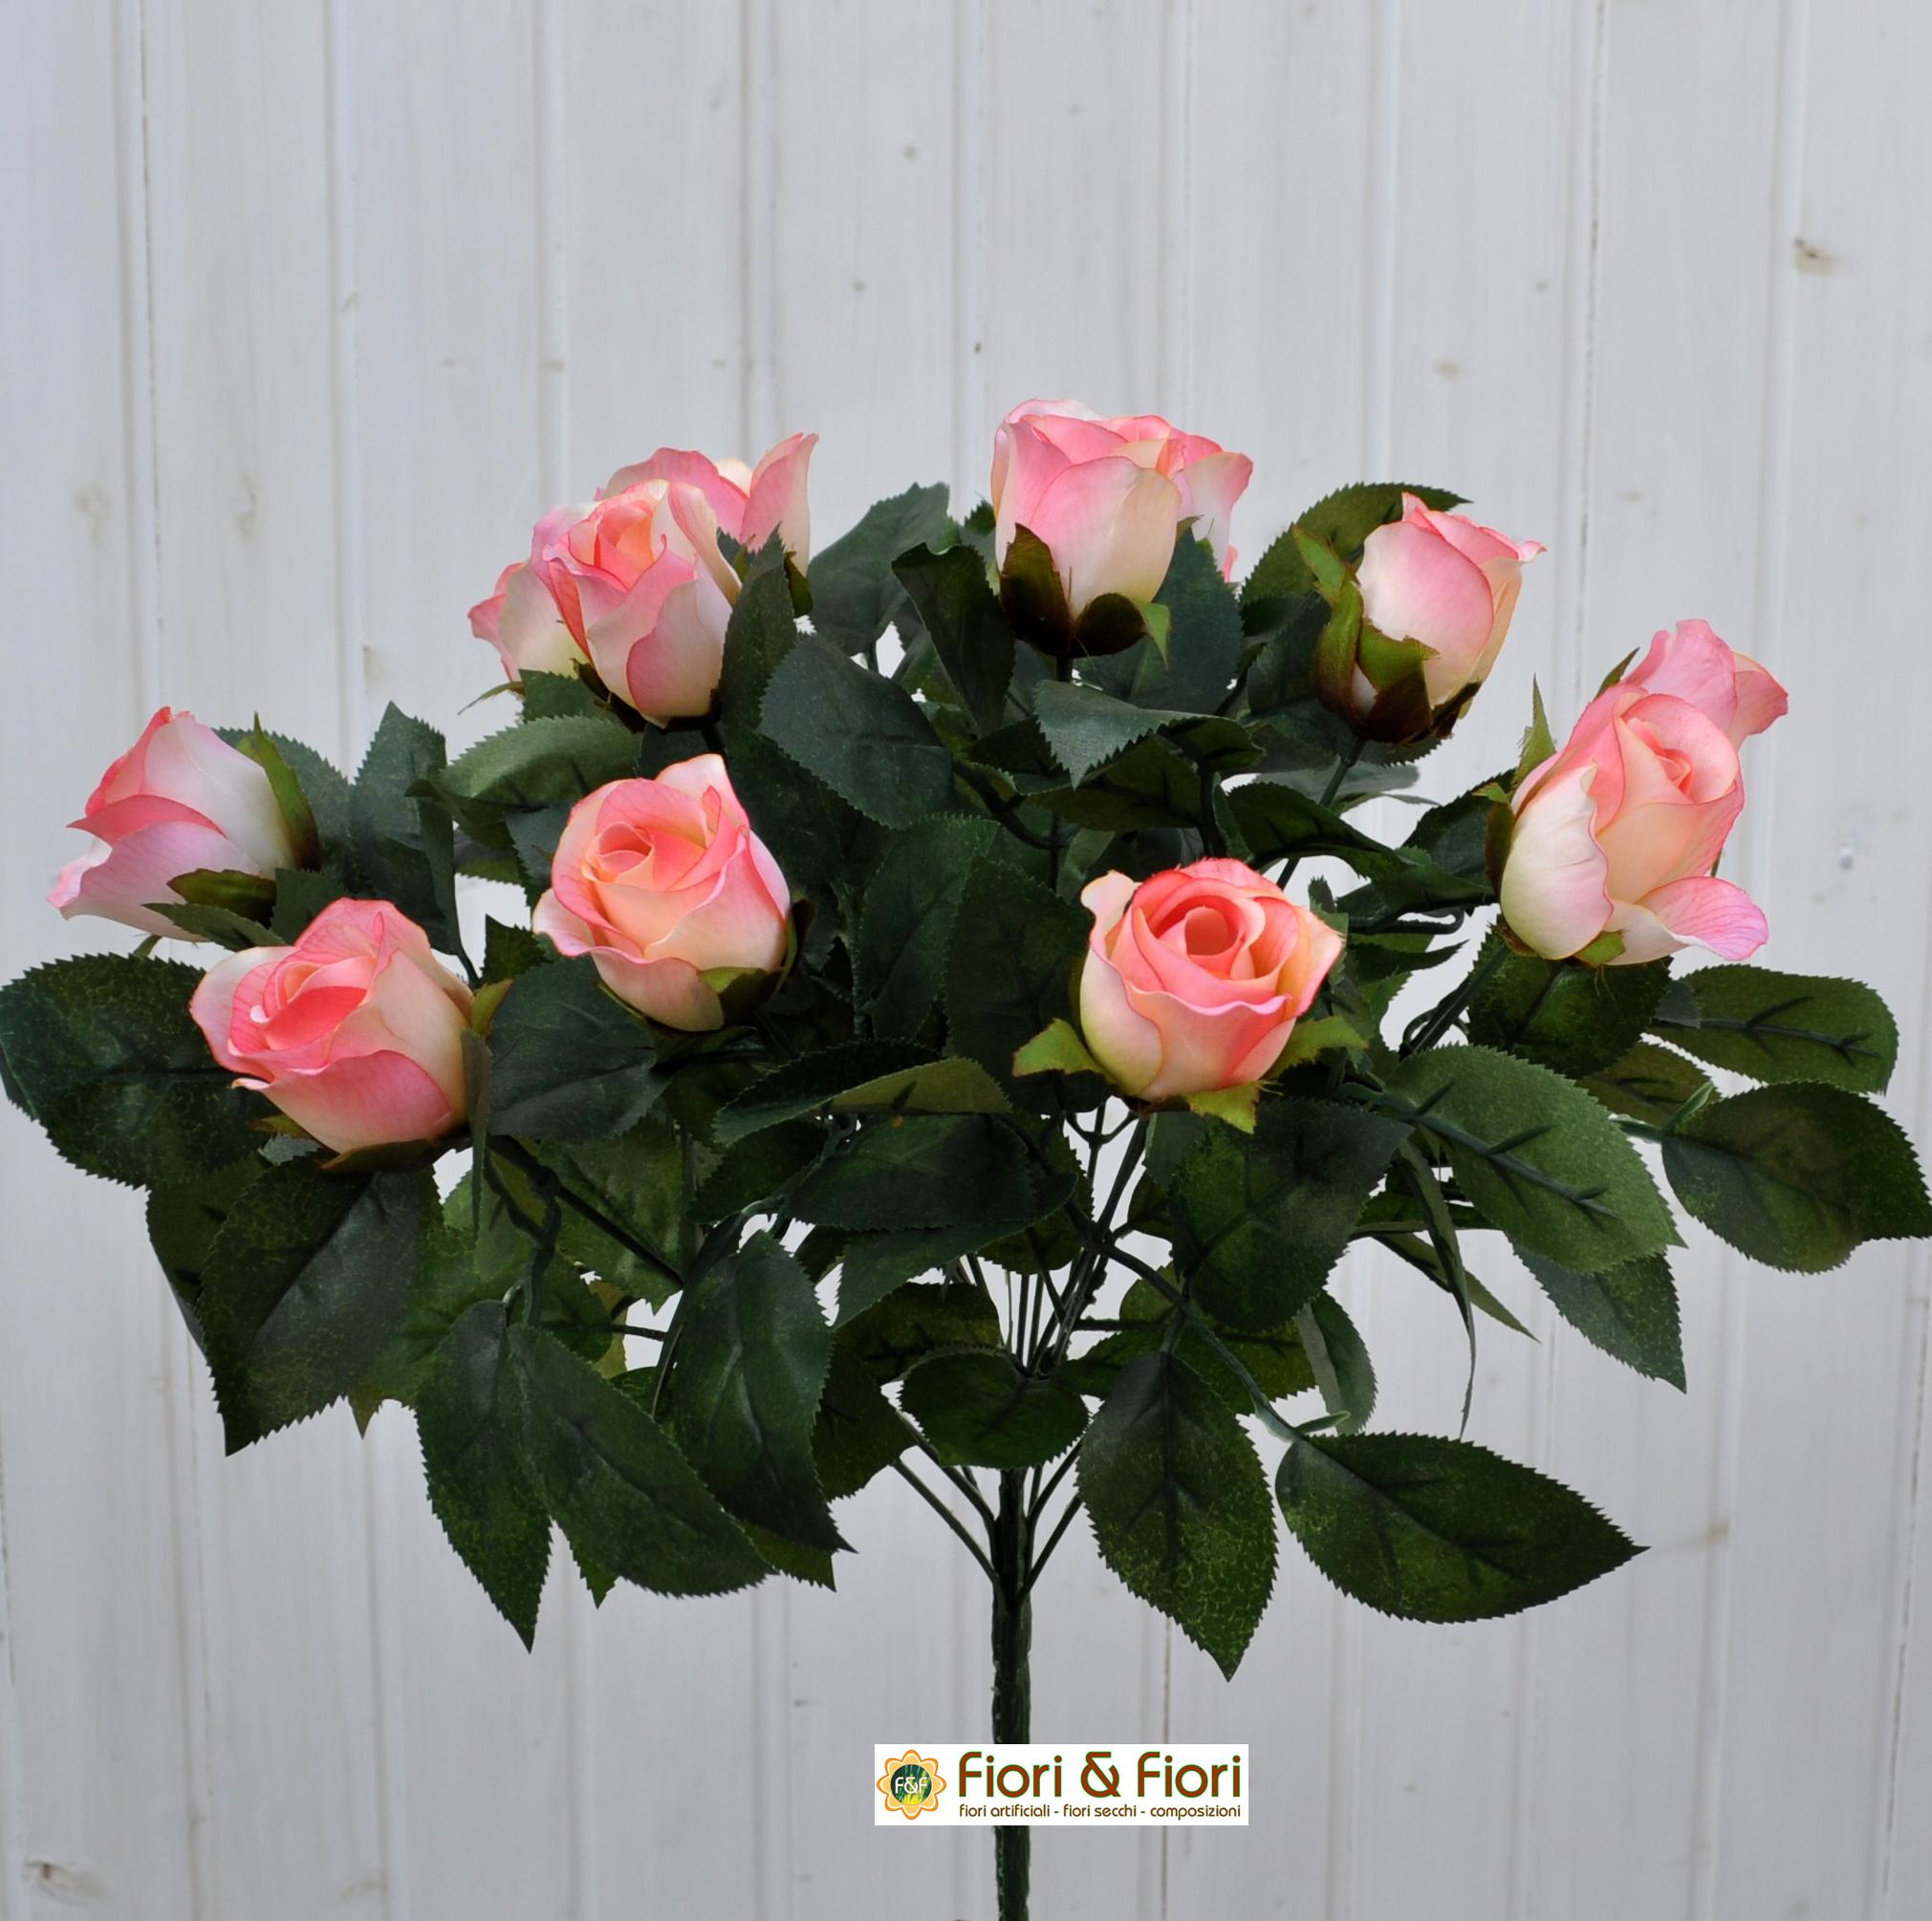 https://www.fioriandfiori.it/wp-content/uploads/2013/10/Bouquet-fiori-artificiali-rose-paris-rosa.jpg